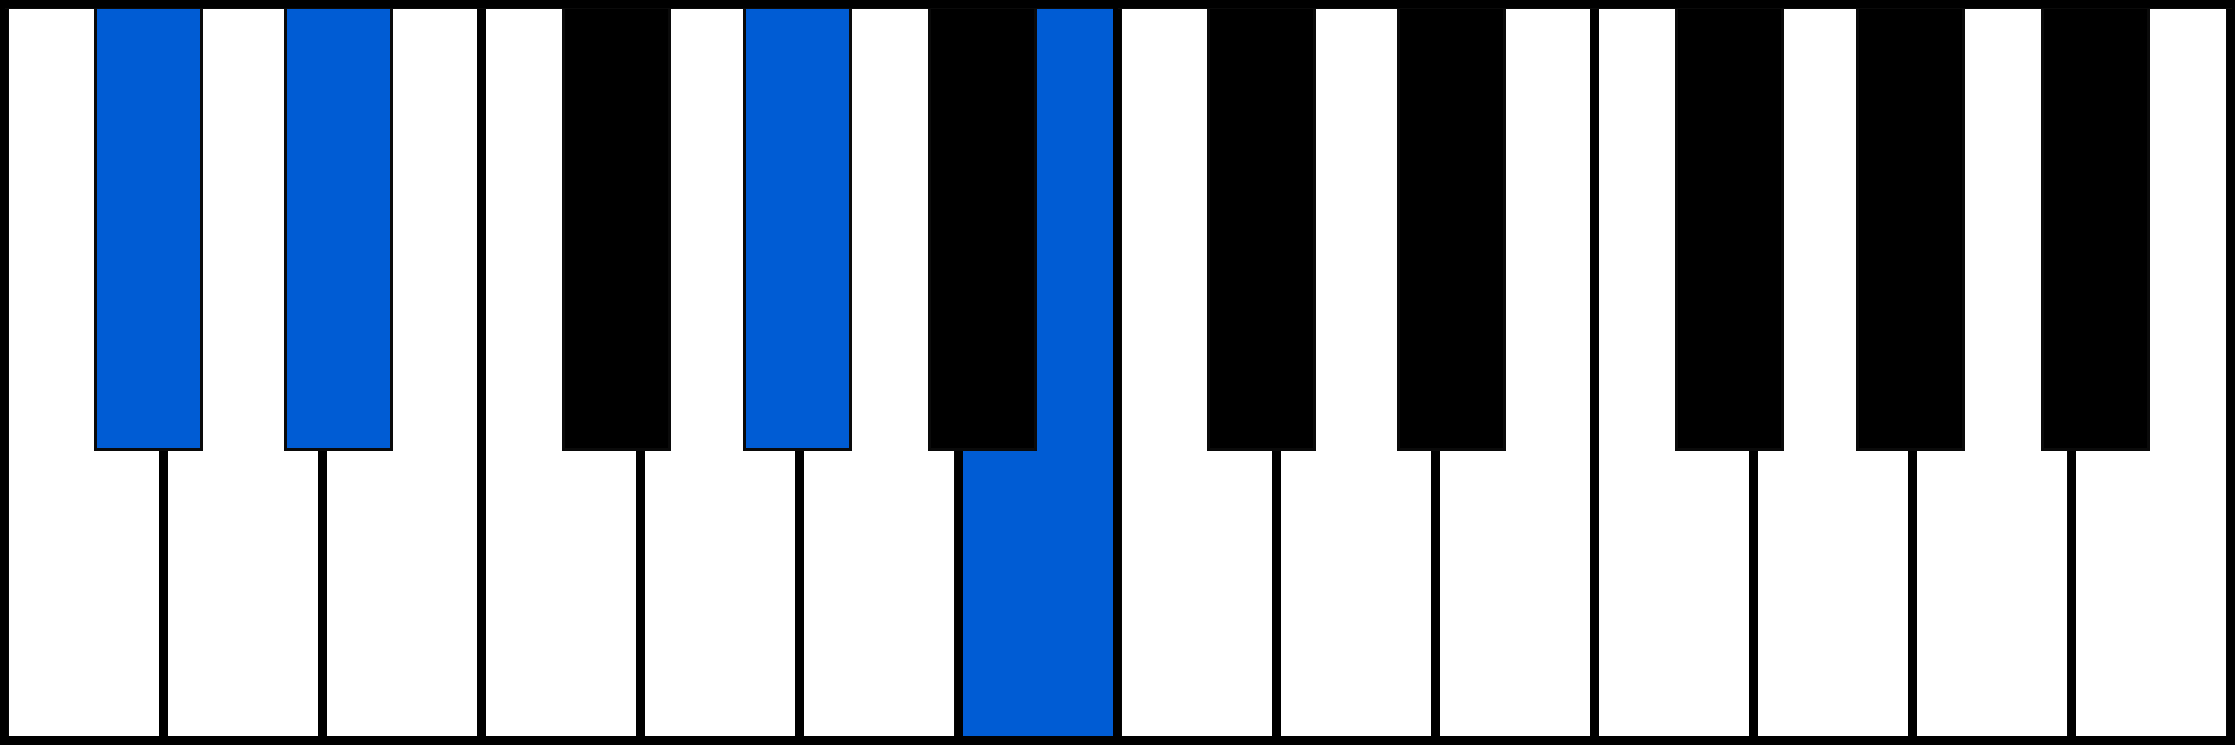 C#7sus2 piano chord fingering